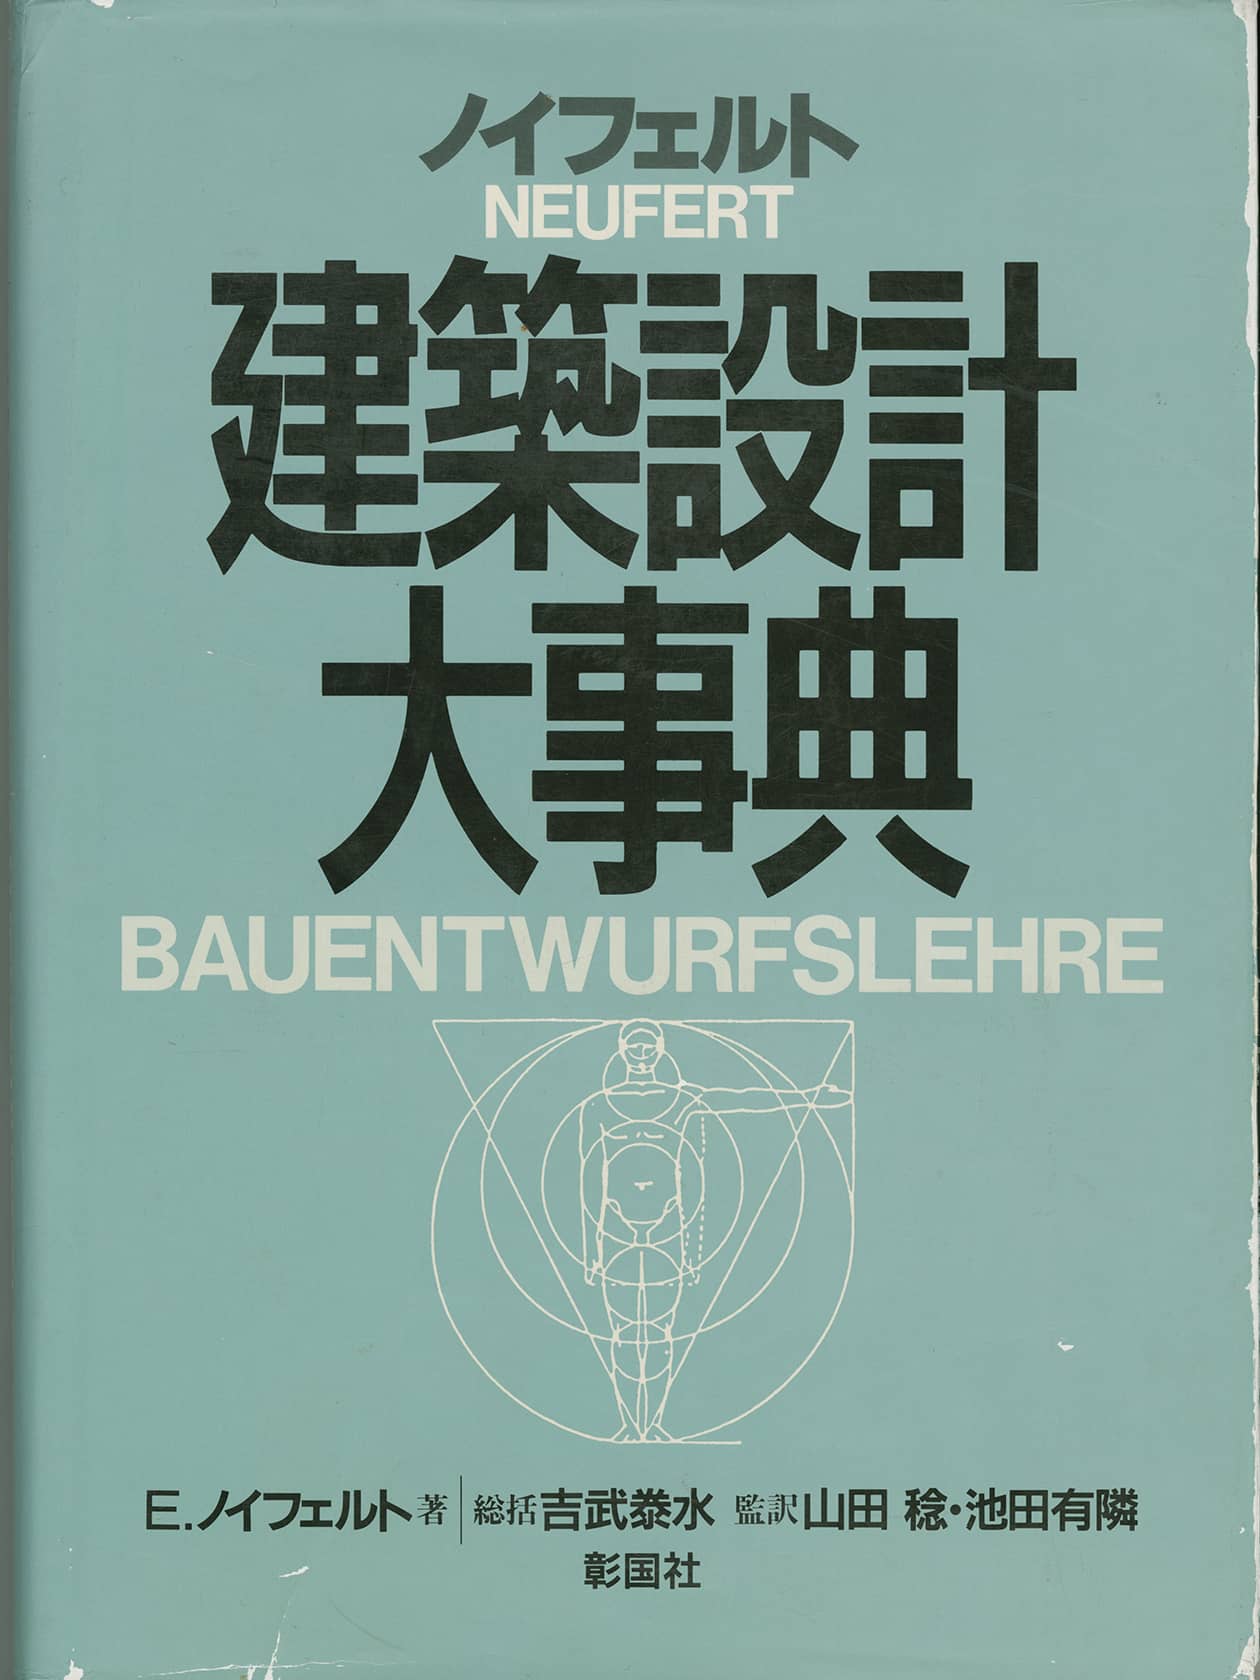 Japanese edition of the Bauentwurfslehre of Ernst Neufert, 1988